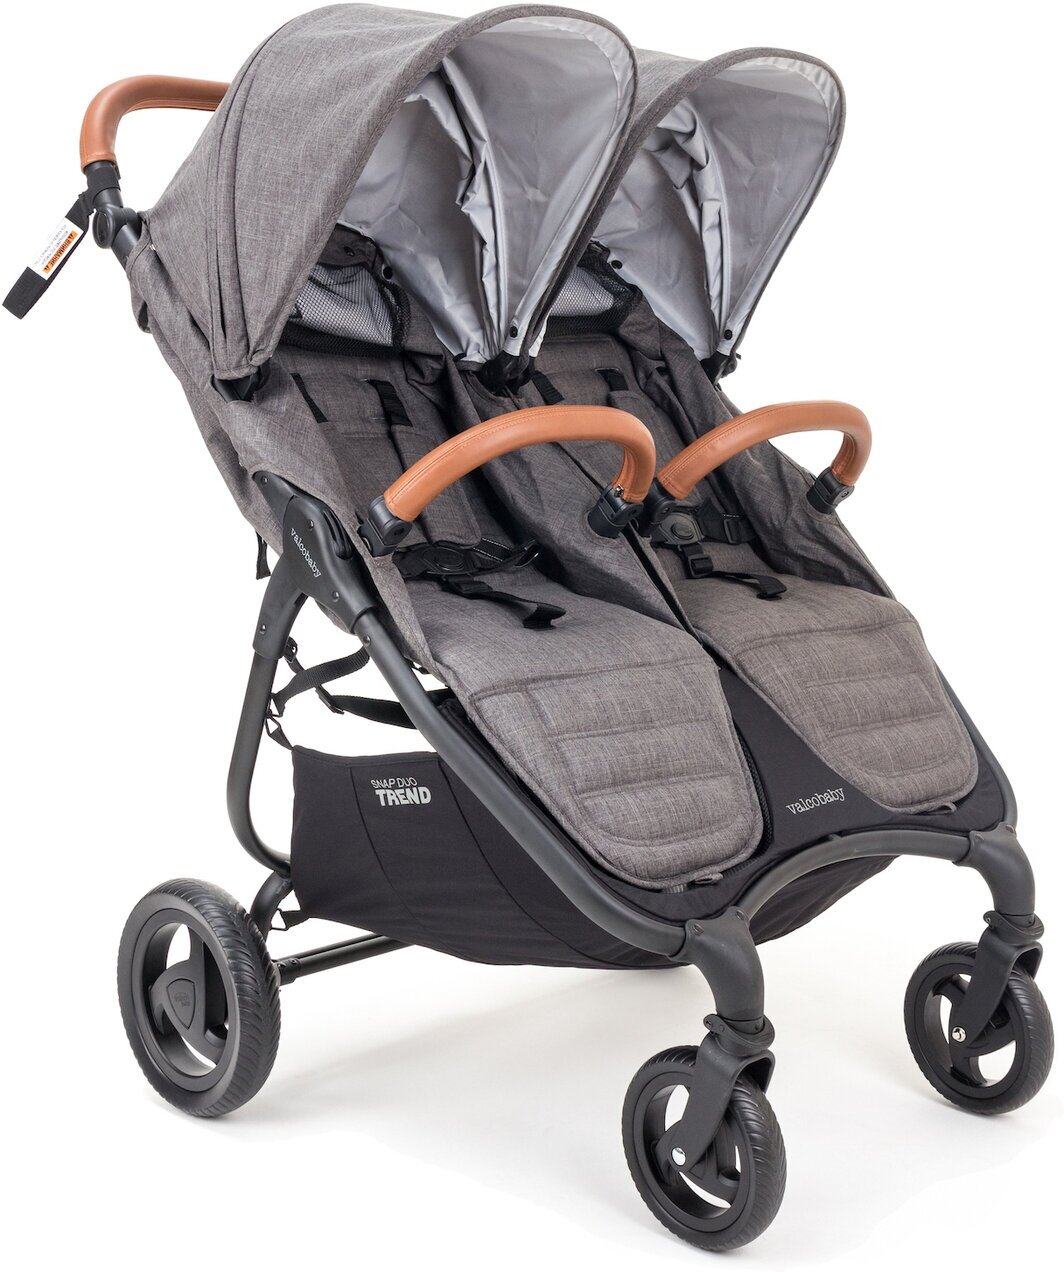 Прогулочная коляска для двойни, легкая, компактная Valco Baby Snap Duo Trend цвет: Charcoal